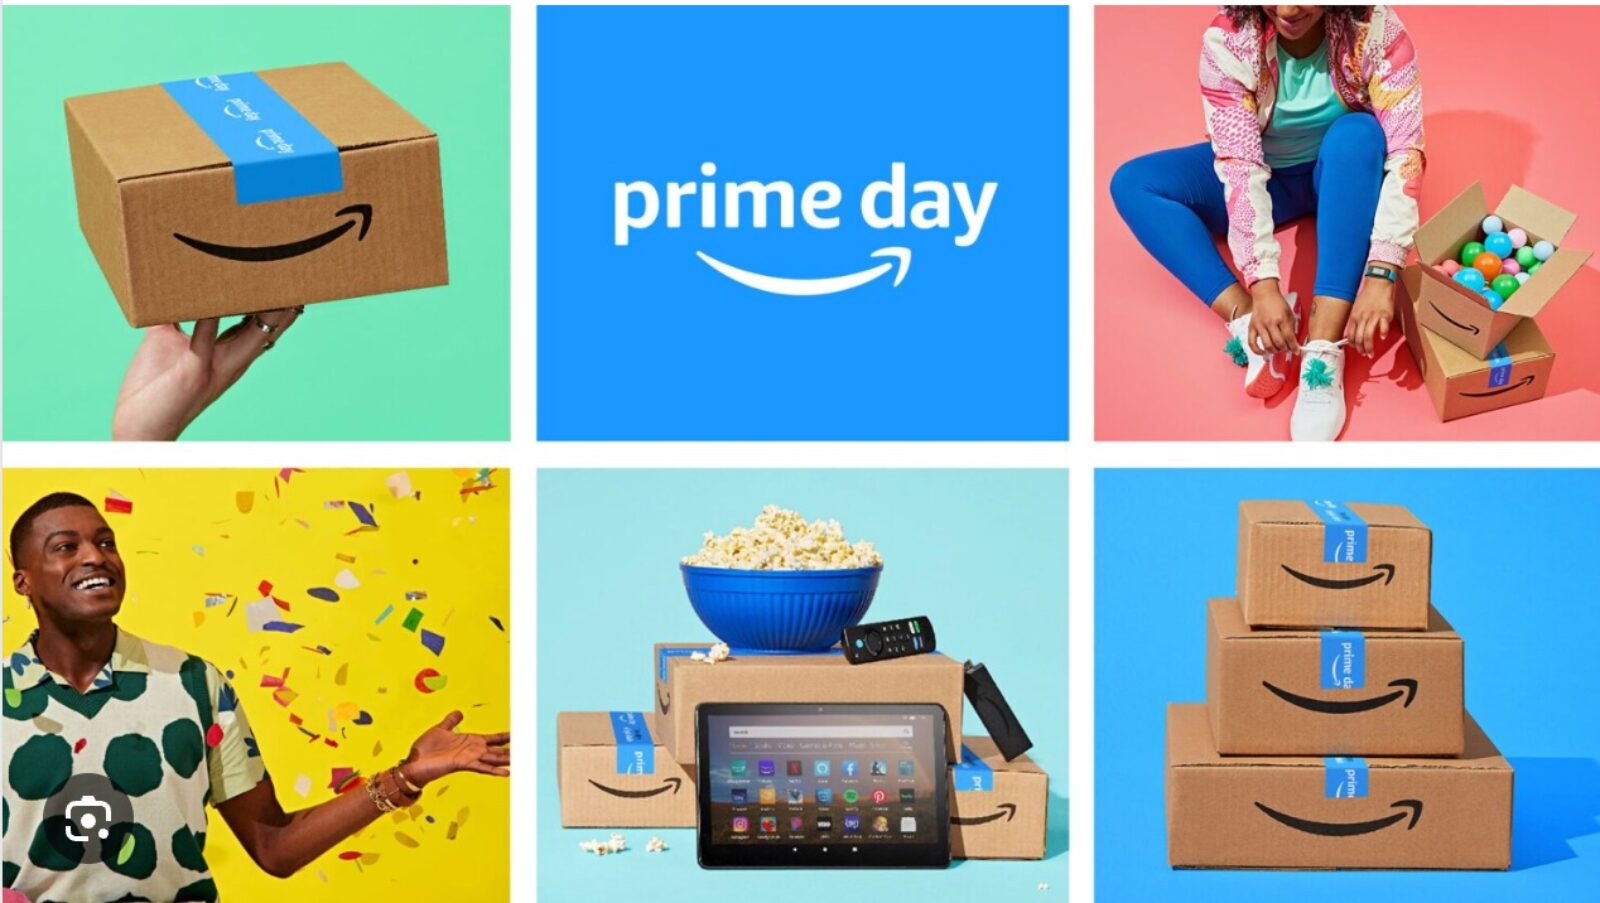 VISIčtvrtek: Amazon je budoucnost, konec cookies mu jen pomůže